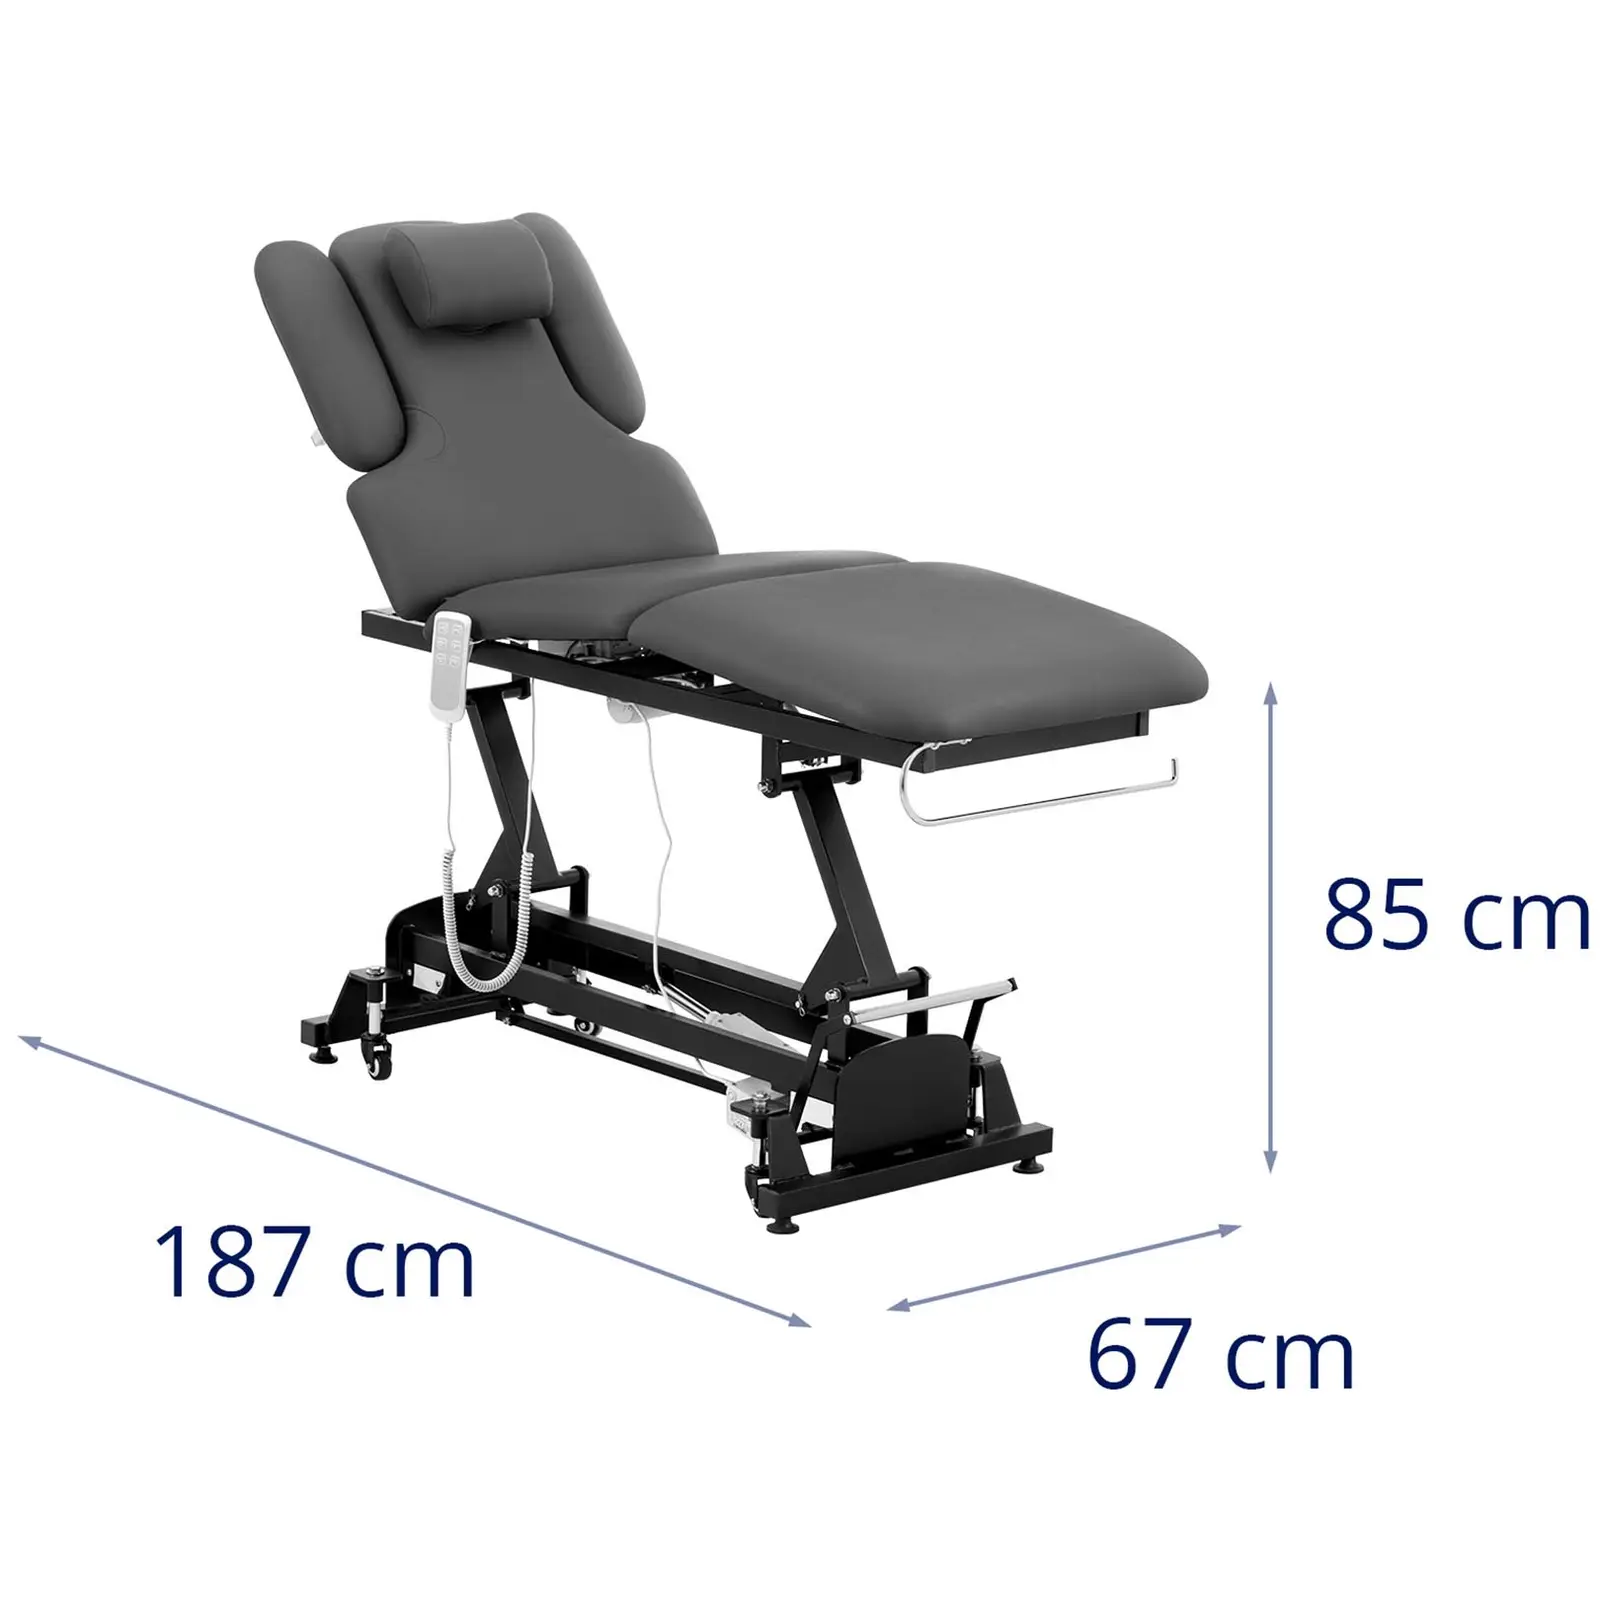 Table de massage - électrique - 250 kg - Noir, Gris